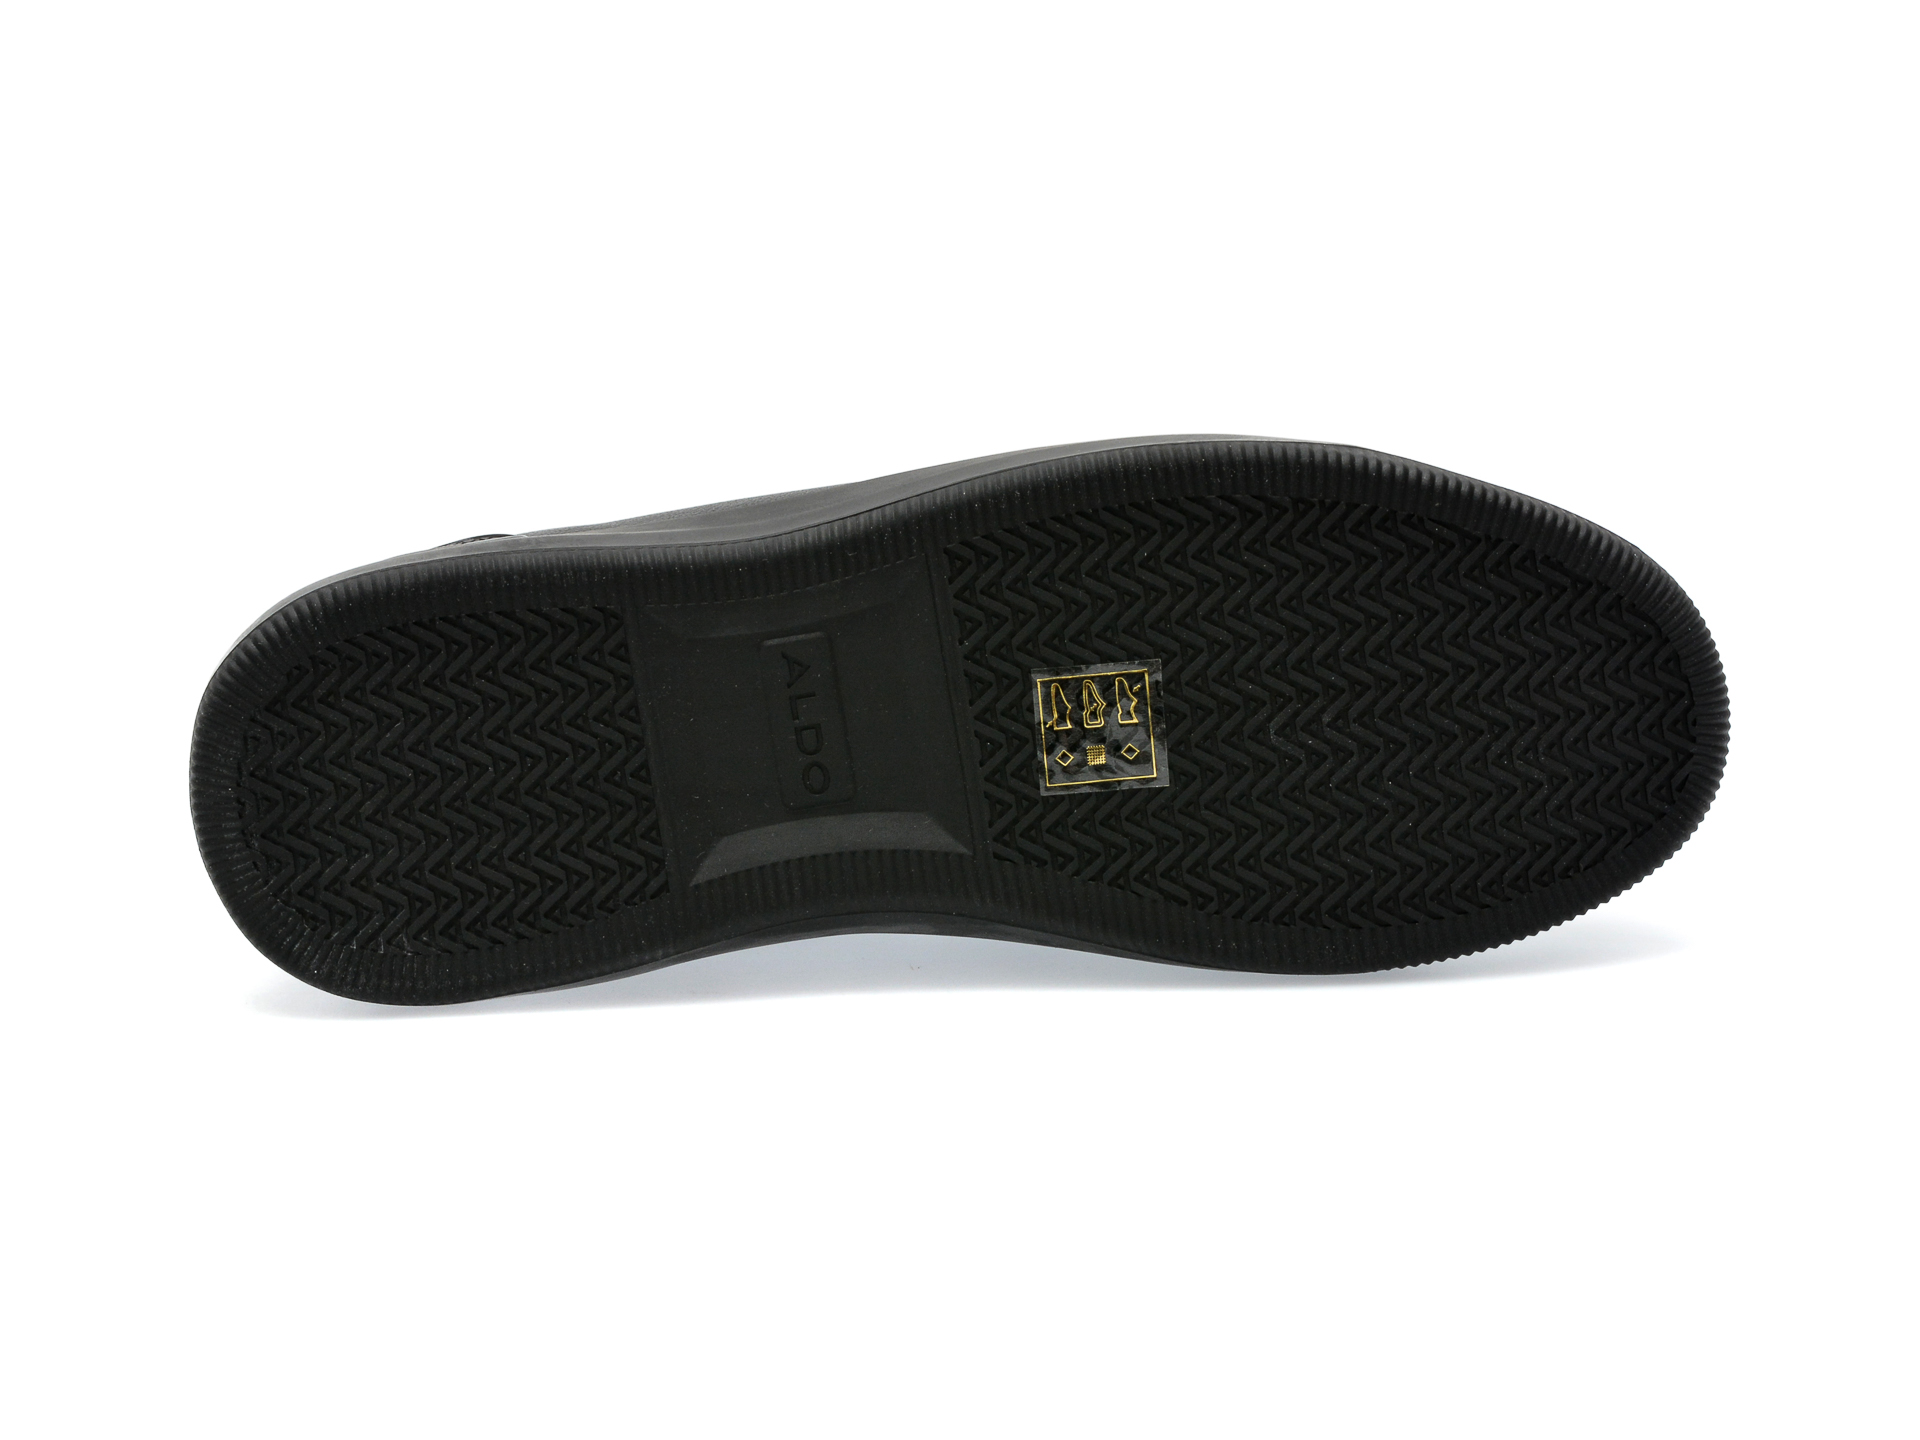 Pantofi ALDO negri, AVEO004, din piele ecologica